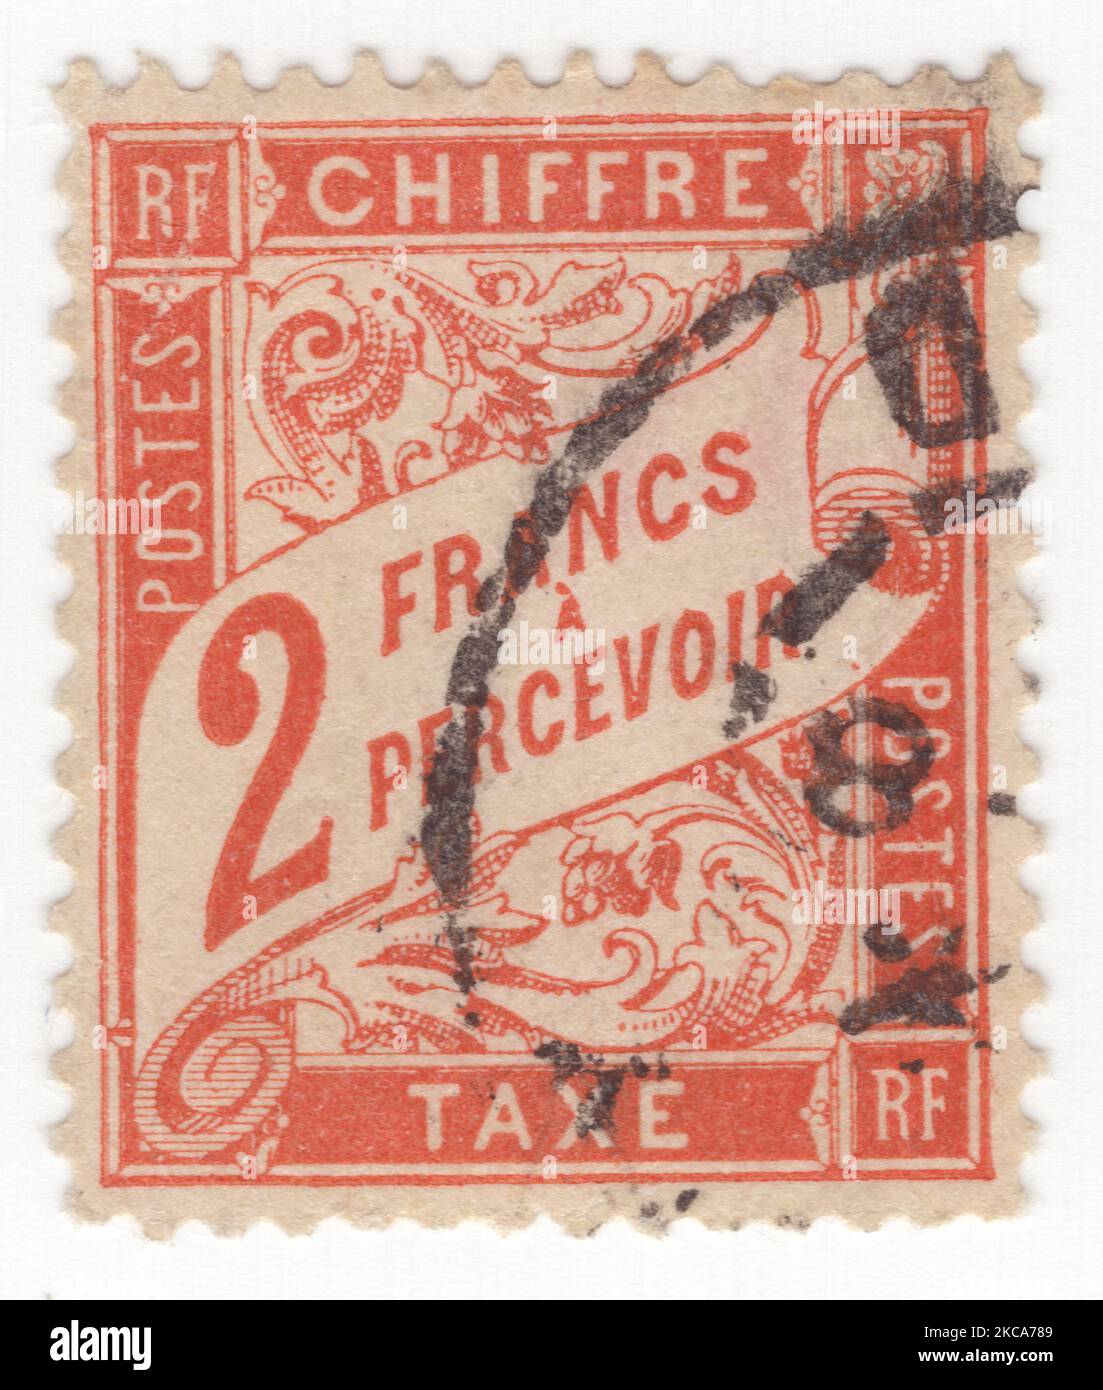 FRANKREICH - 1910: Eine rot-orange Briefmarke mit 2 Franken, die Ziffern mit floralem Ornament zeigt Stockfoto